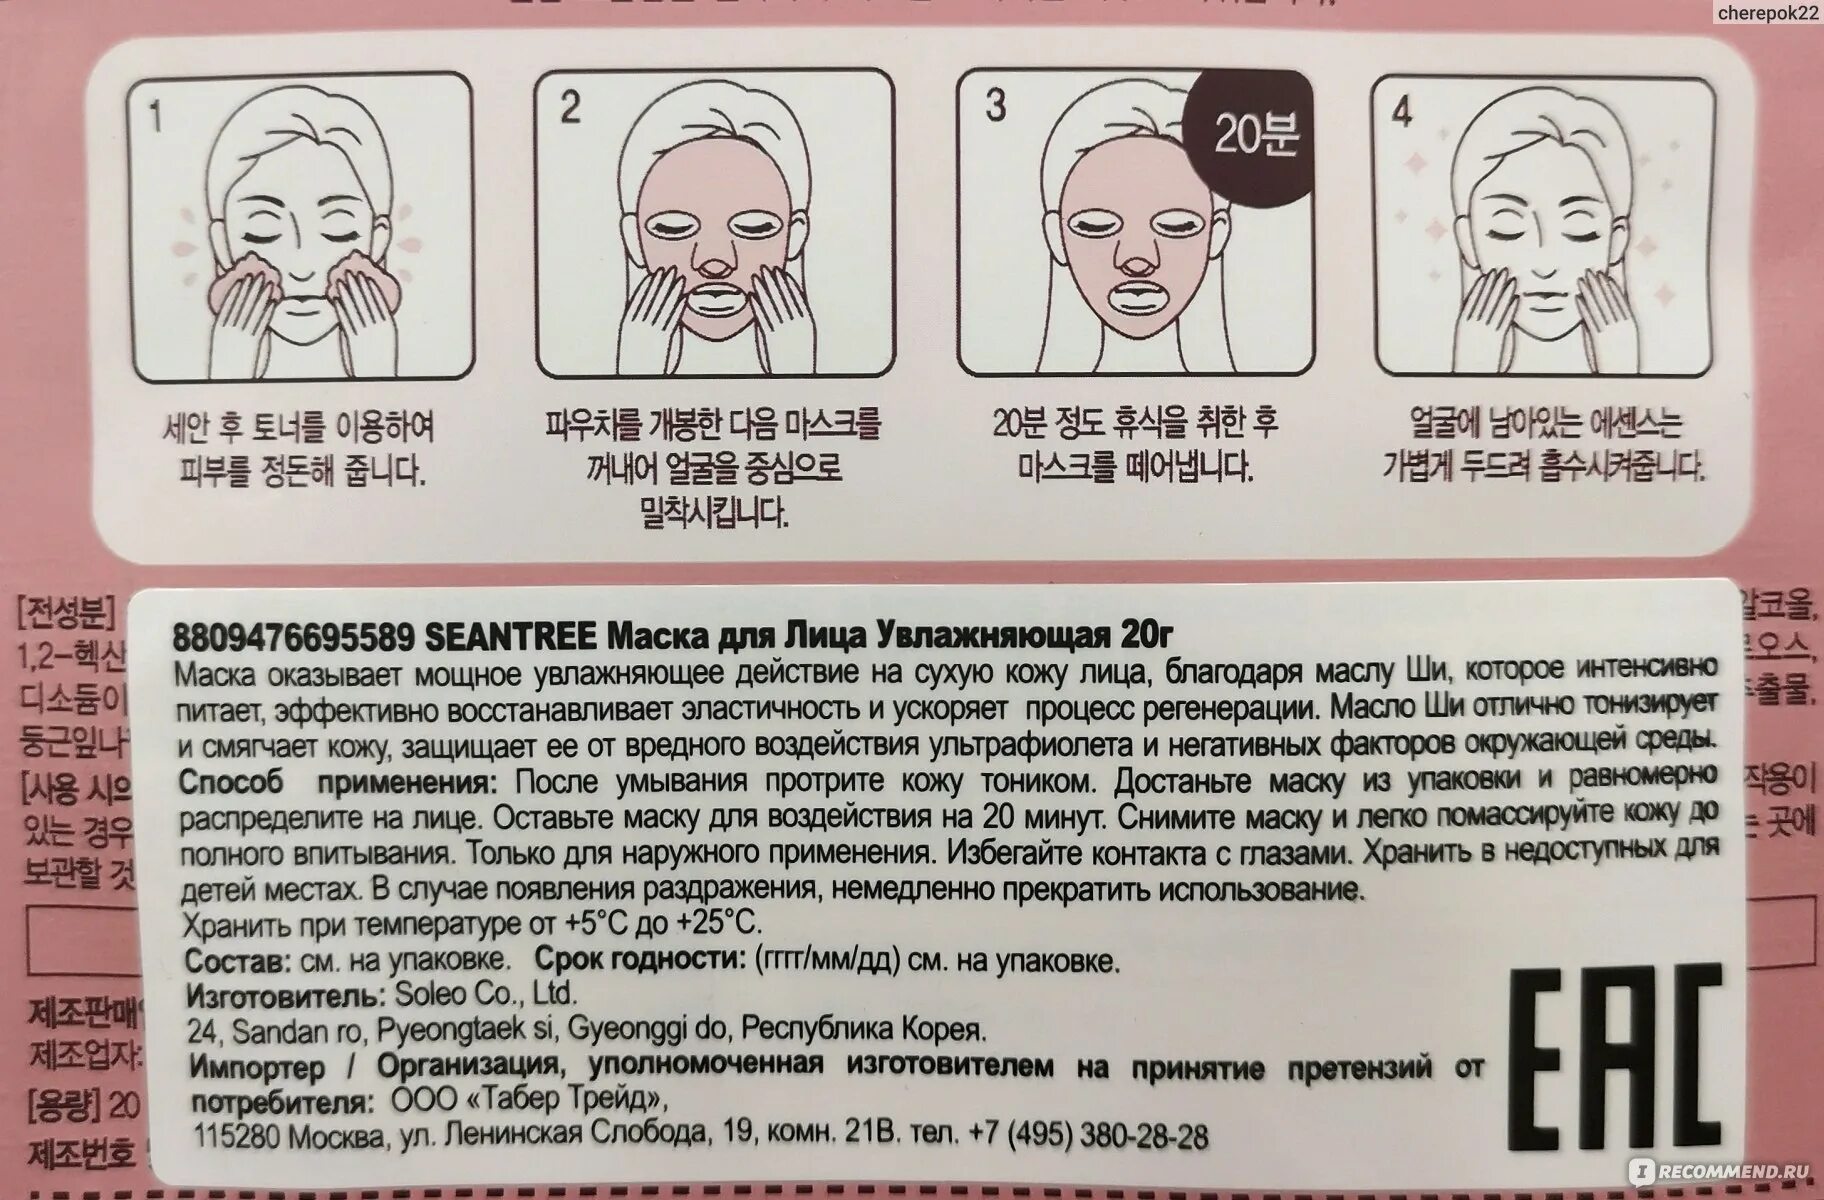 Сколько раз используют тканевые маски. Маски для лица тканевые инструкция. Корейская маска для воздействия. Тканевая маска для лица как пользоваться. Как пользоваться китайскими масками для лица.